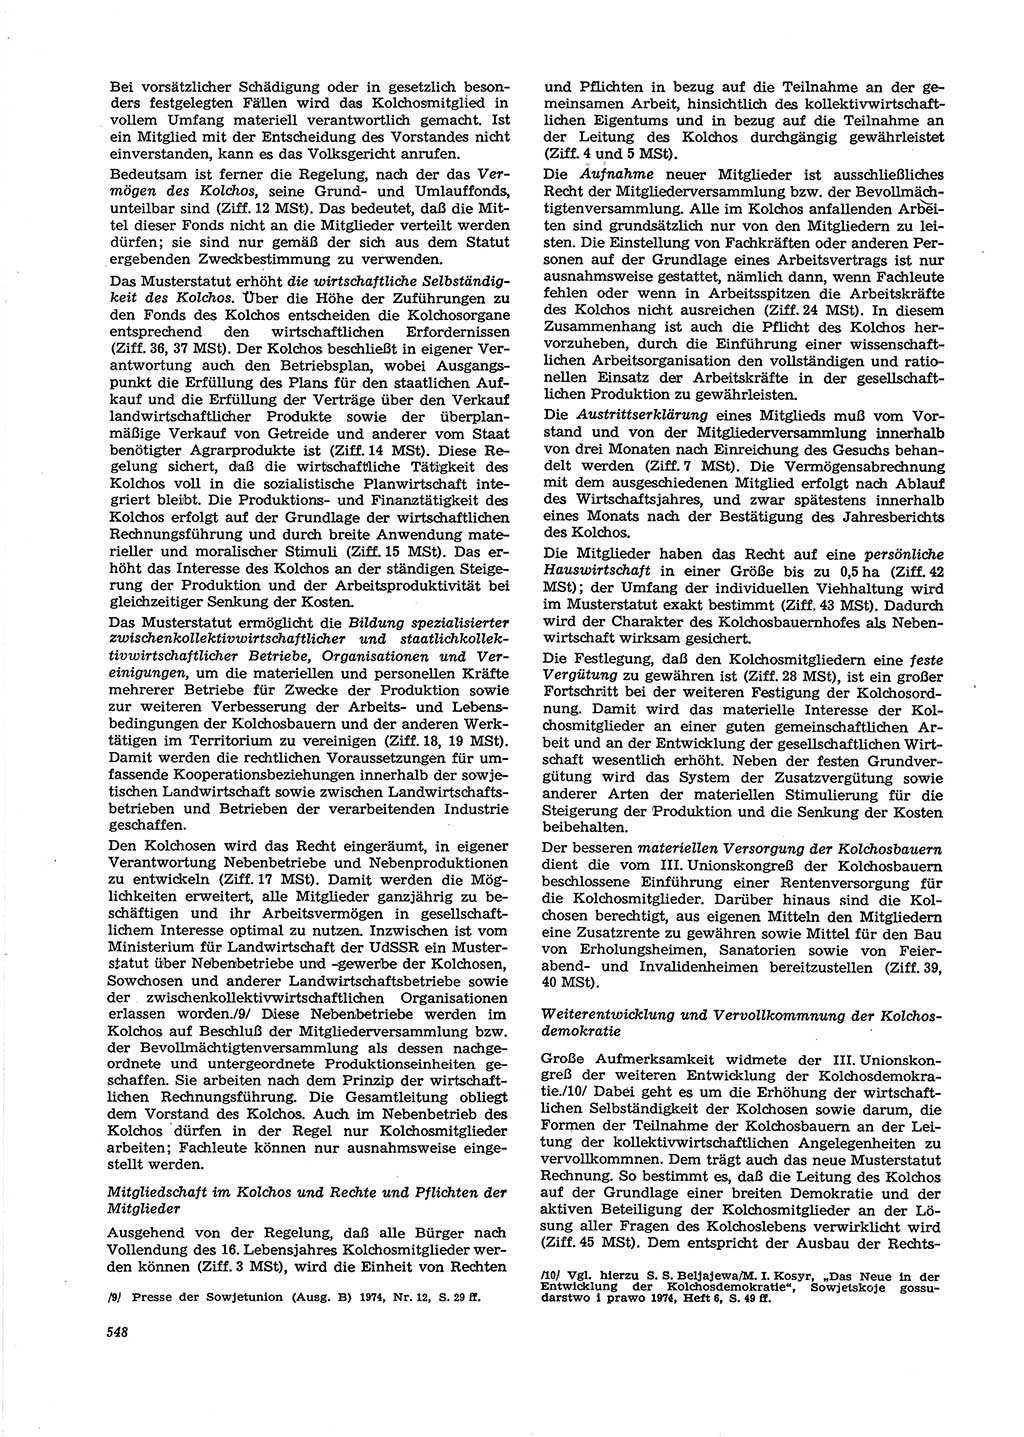 Neue Justiz (NJ), Zeitschrift für Recht und Rechtswissenschaft [Deutsche Demokratische Republik (DDR)], 29. Jahrgang 1975, Seite 548 (NJ DDR 1975, S. 548)